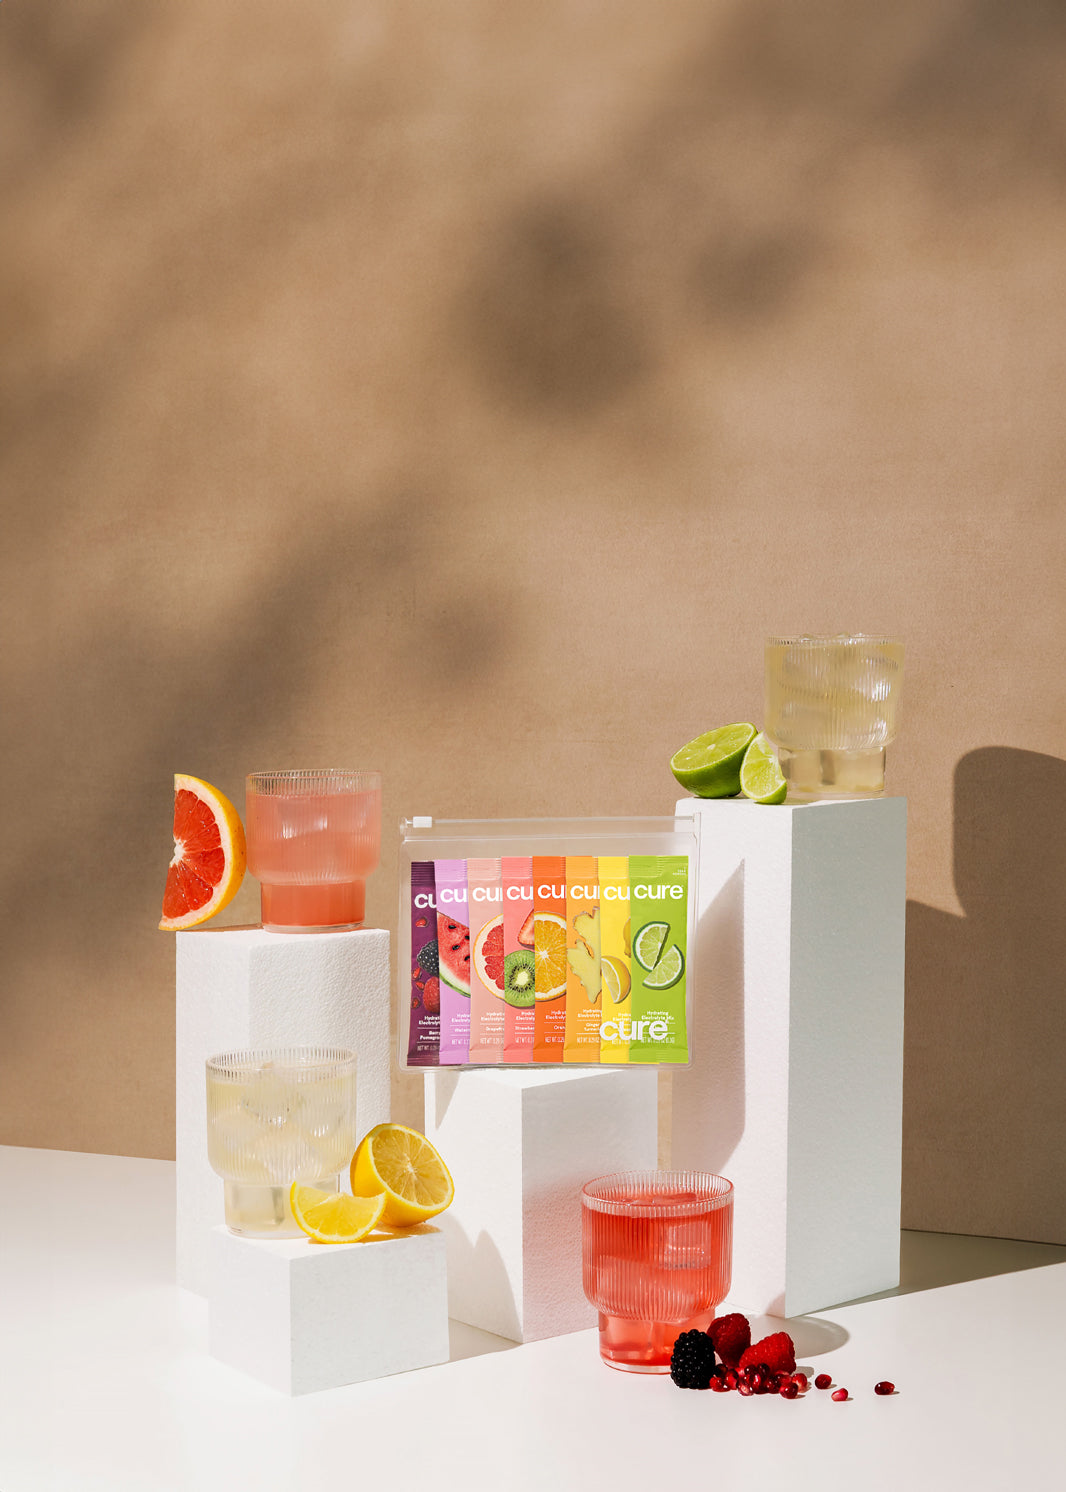 'Cure' drinks on pedestals: grapefruit, pink, lemon, lime flavors, beige background.